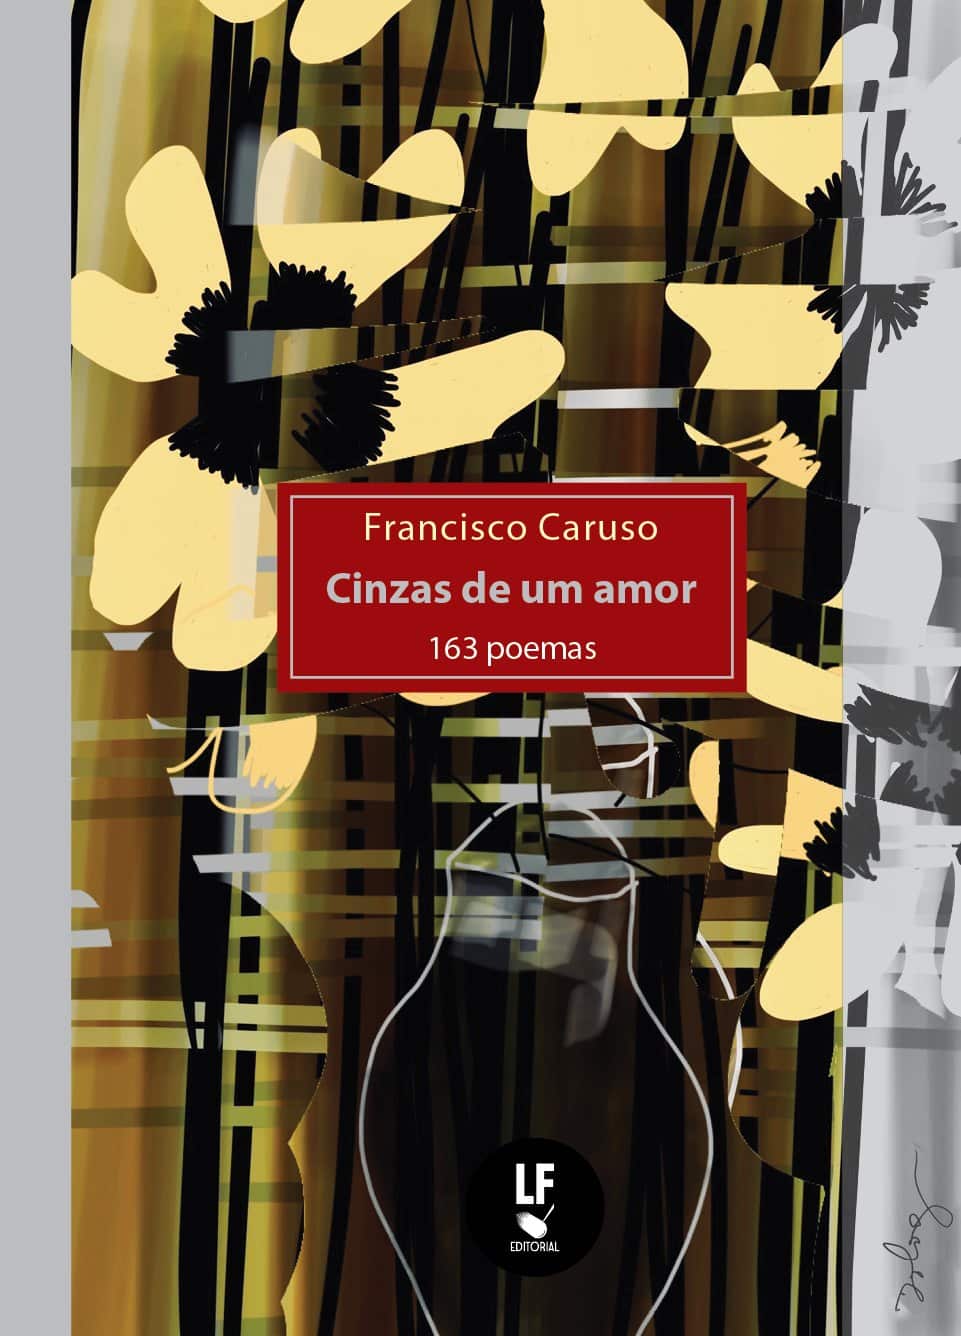 revistaprosaversoearte.com - A poesia de Francisco Caruso e a sua série de 'Quartetos de Amor'